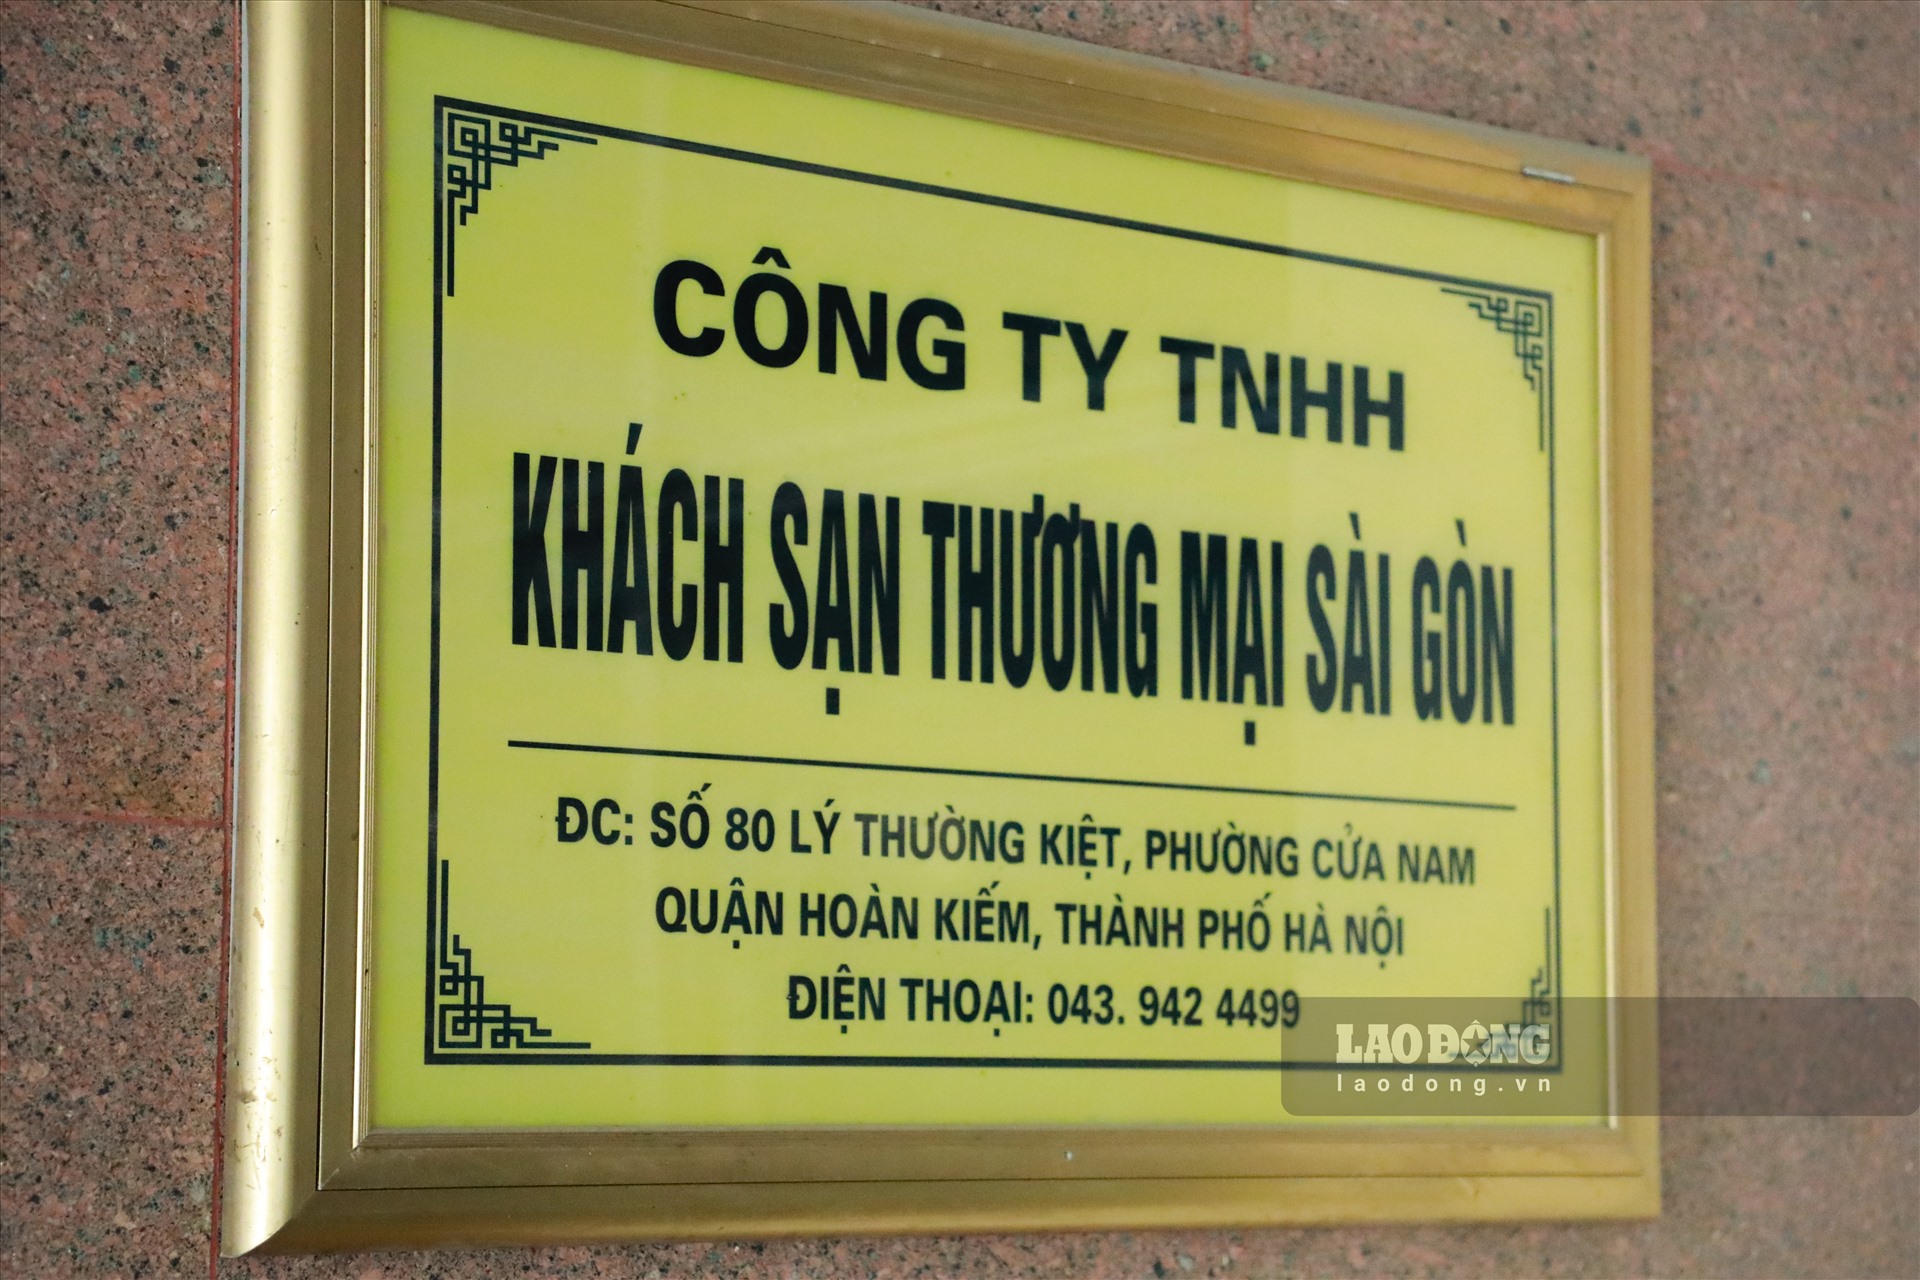 Lô đất tại 80 Lý Thường Kiệt được VNR hợp tác với Tổng Công ty Du lịch Sài Gòn để kinh doanh khách sạn. Tuy nhiên, sau nhiều năm kinh doanh, hiện khách sạn này cũng đã dừng hoạt động.